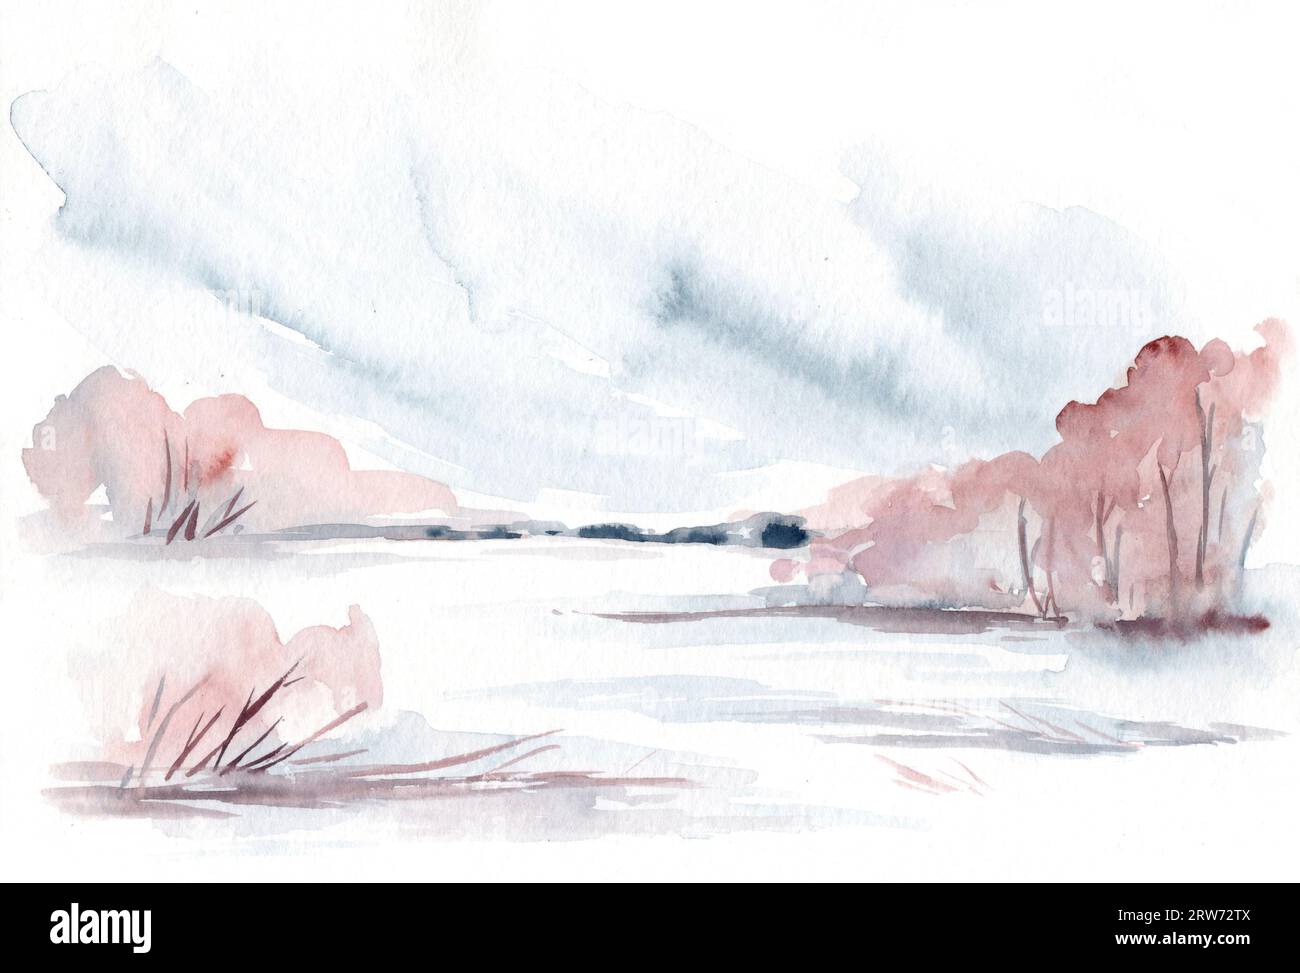 Paysage aquarelle : paysage hivernal enneigé avec une rivière gelée et des arbres Banque D'Images